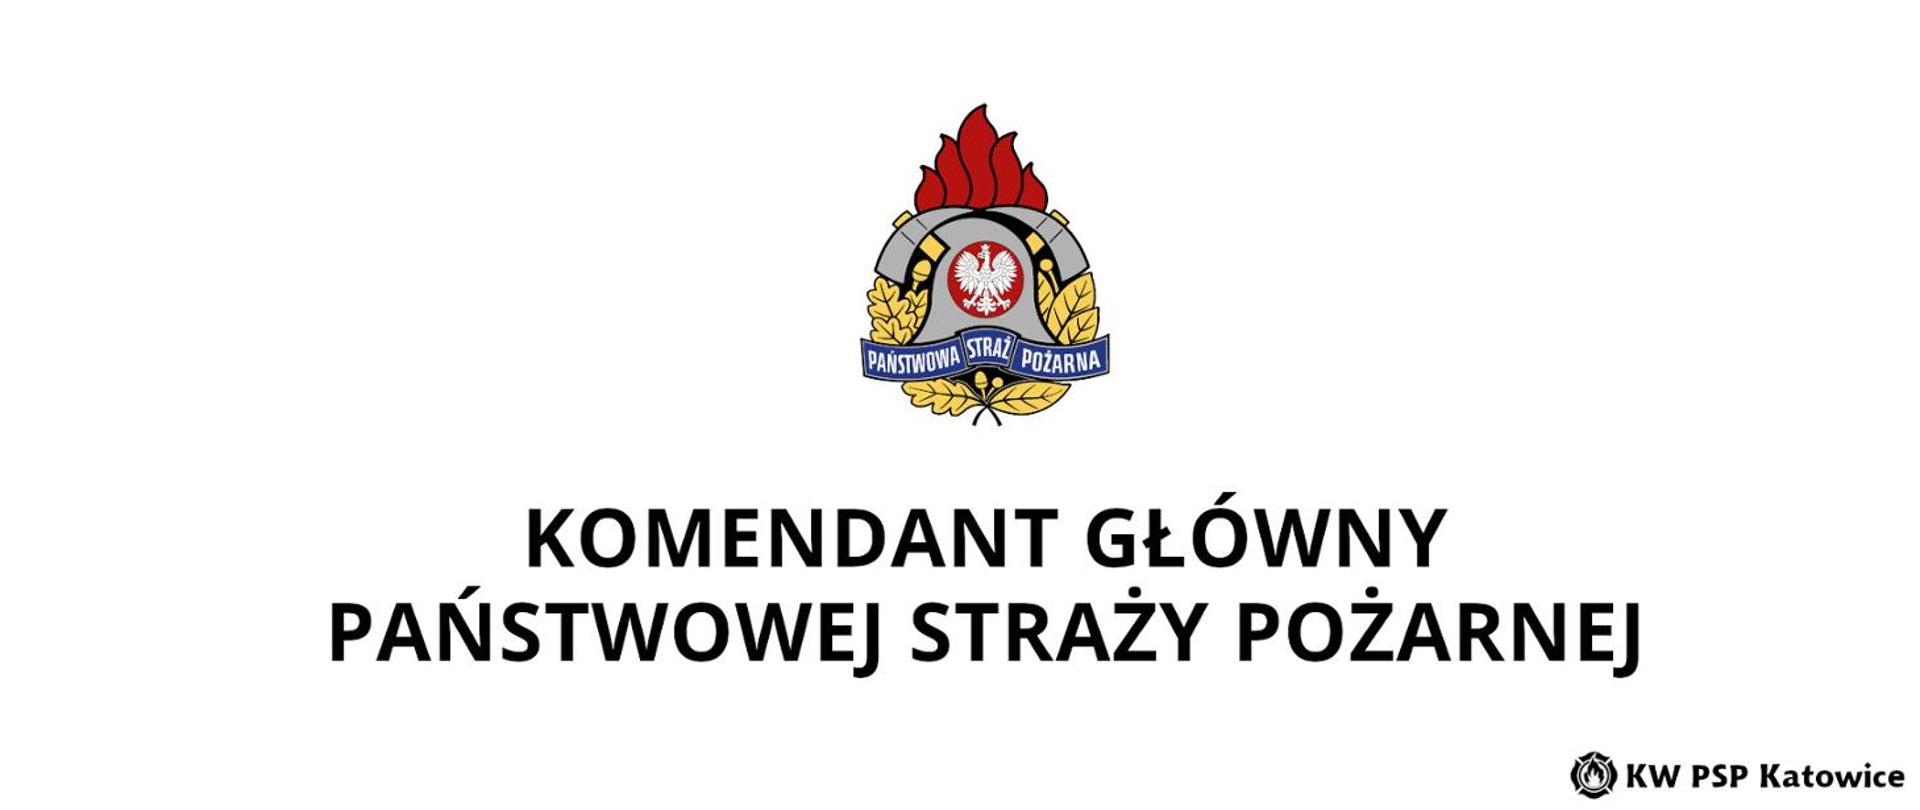 Ilustracja przedstawia na białym tle duży czarny napis Komendant Główny Państwowej Straży Pożarnej, nad napisem logo państwowej Straży Pożarnej, a w dolnym prawym rogu napis KW PSP Katowice.